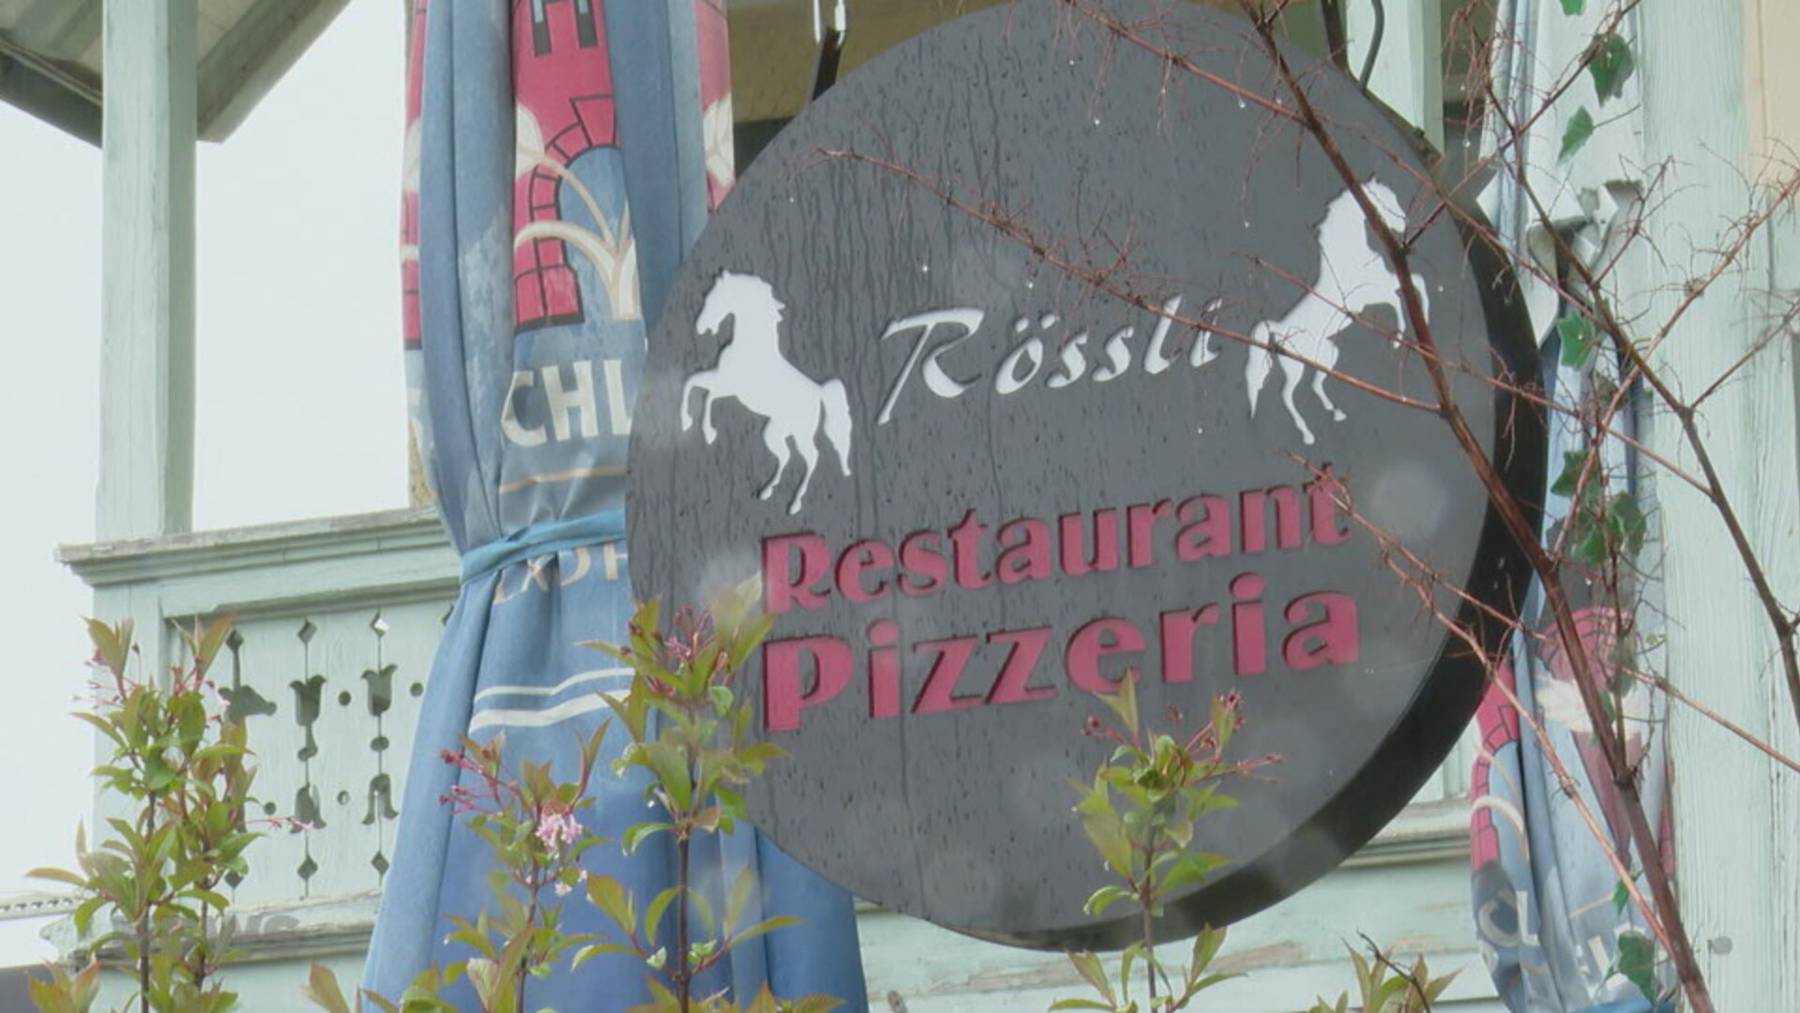 Am Freitag wurde im Restaurant Rössli in Boll ein Mann erschossen.